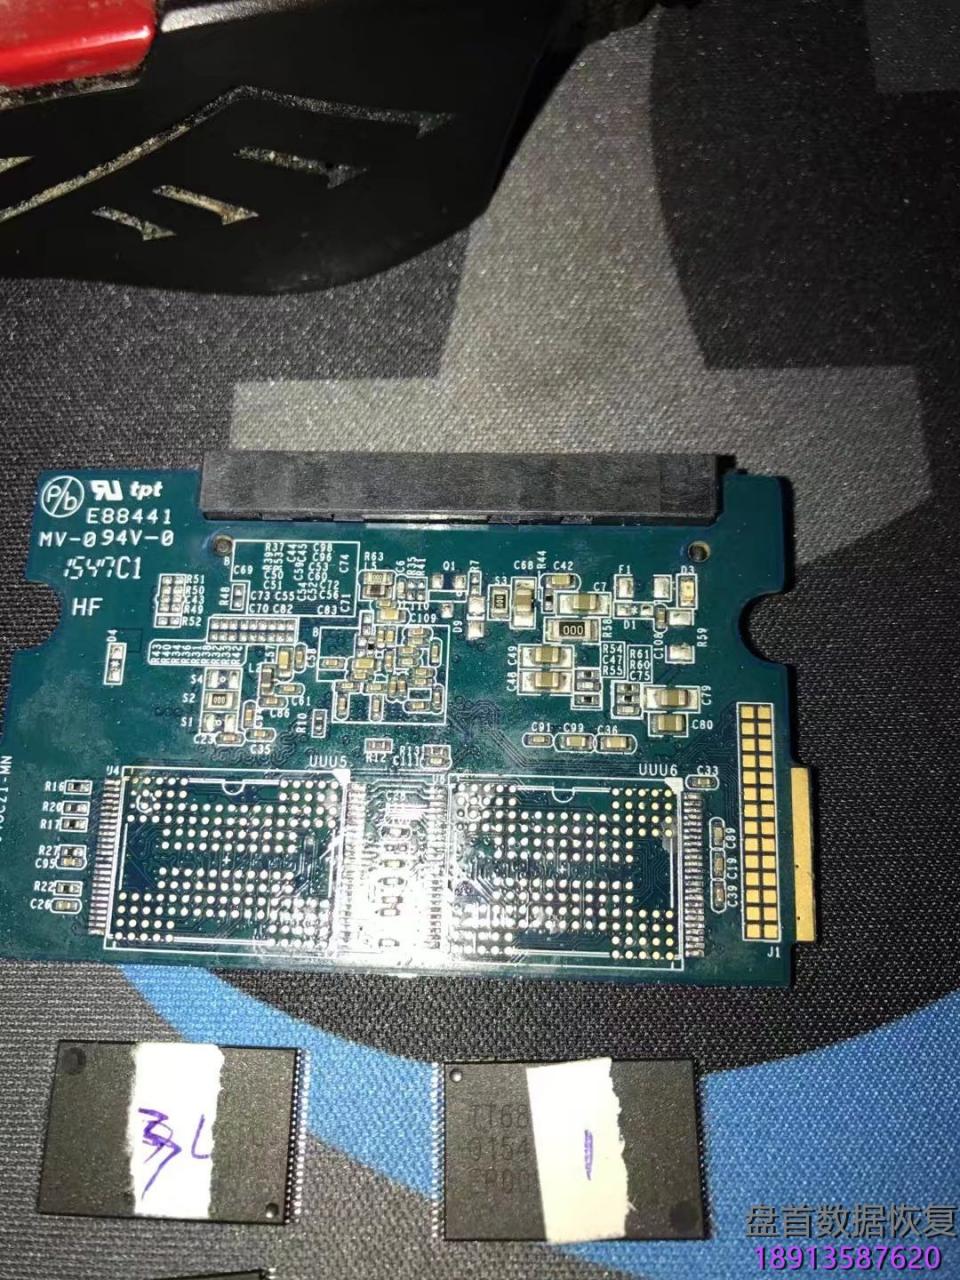 影驰铁甲战将系列120G固态硬盘掉盘无法识别不读盘PS3109主控芯片读取Flash芯片恢复成功